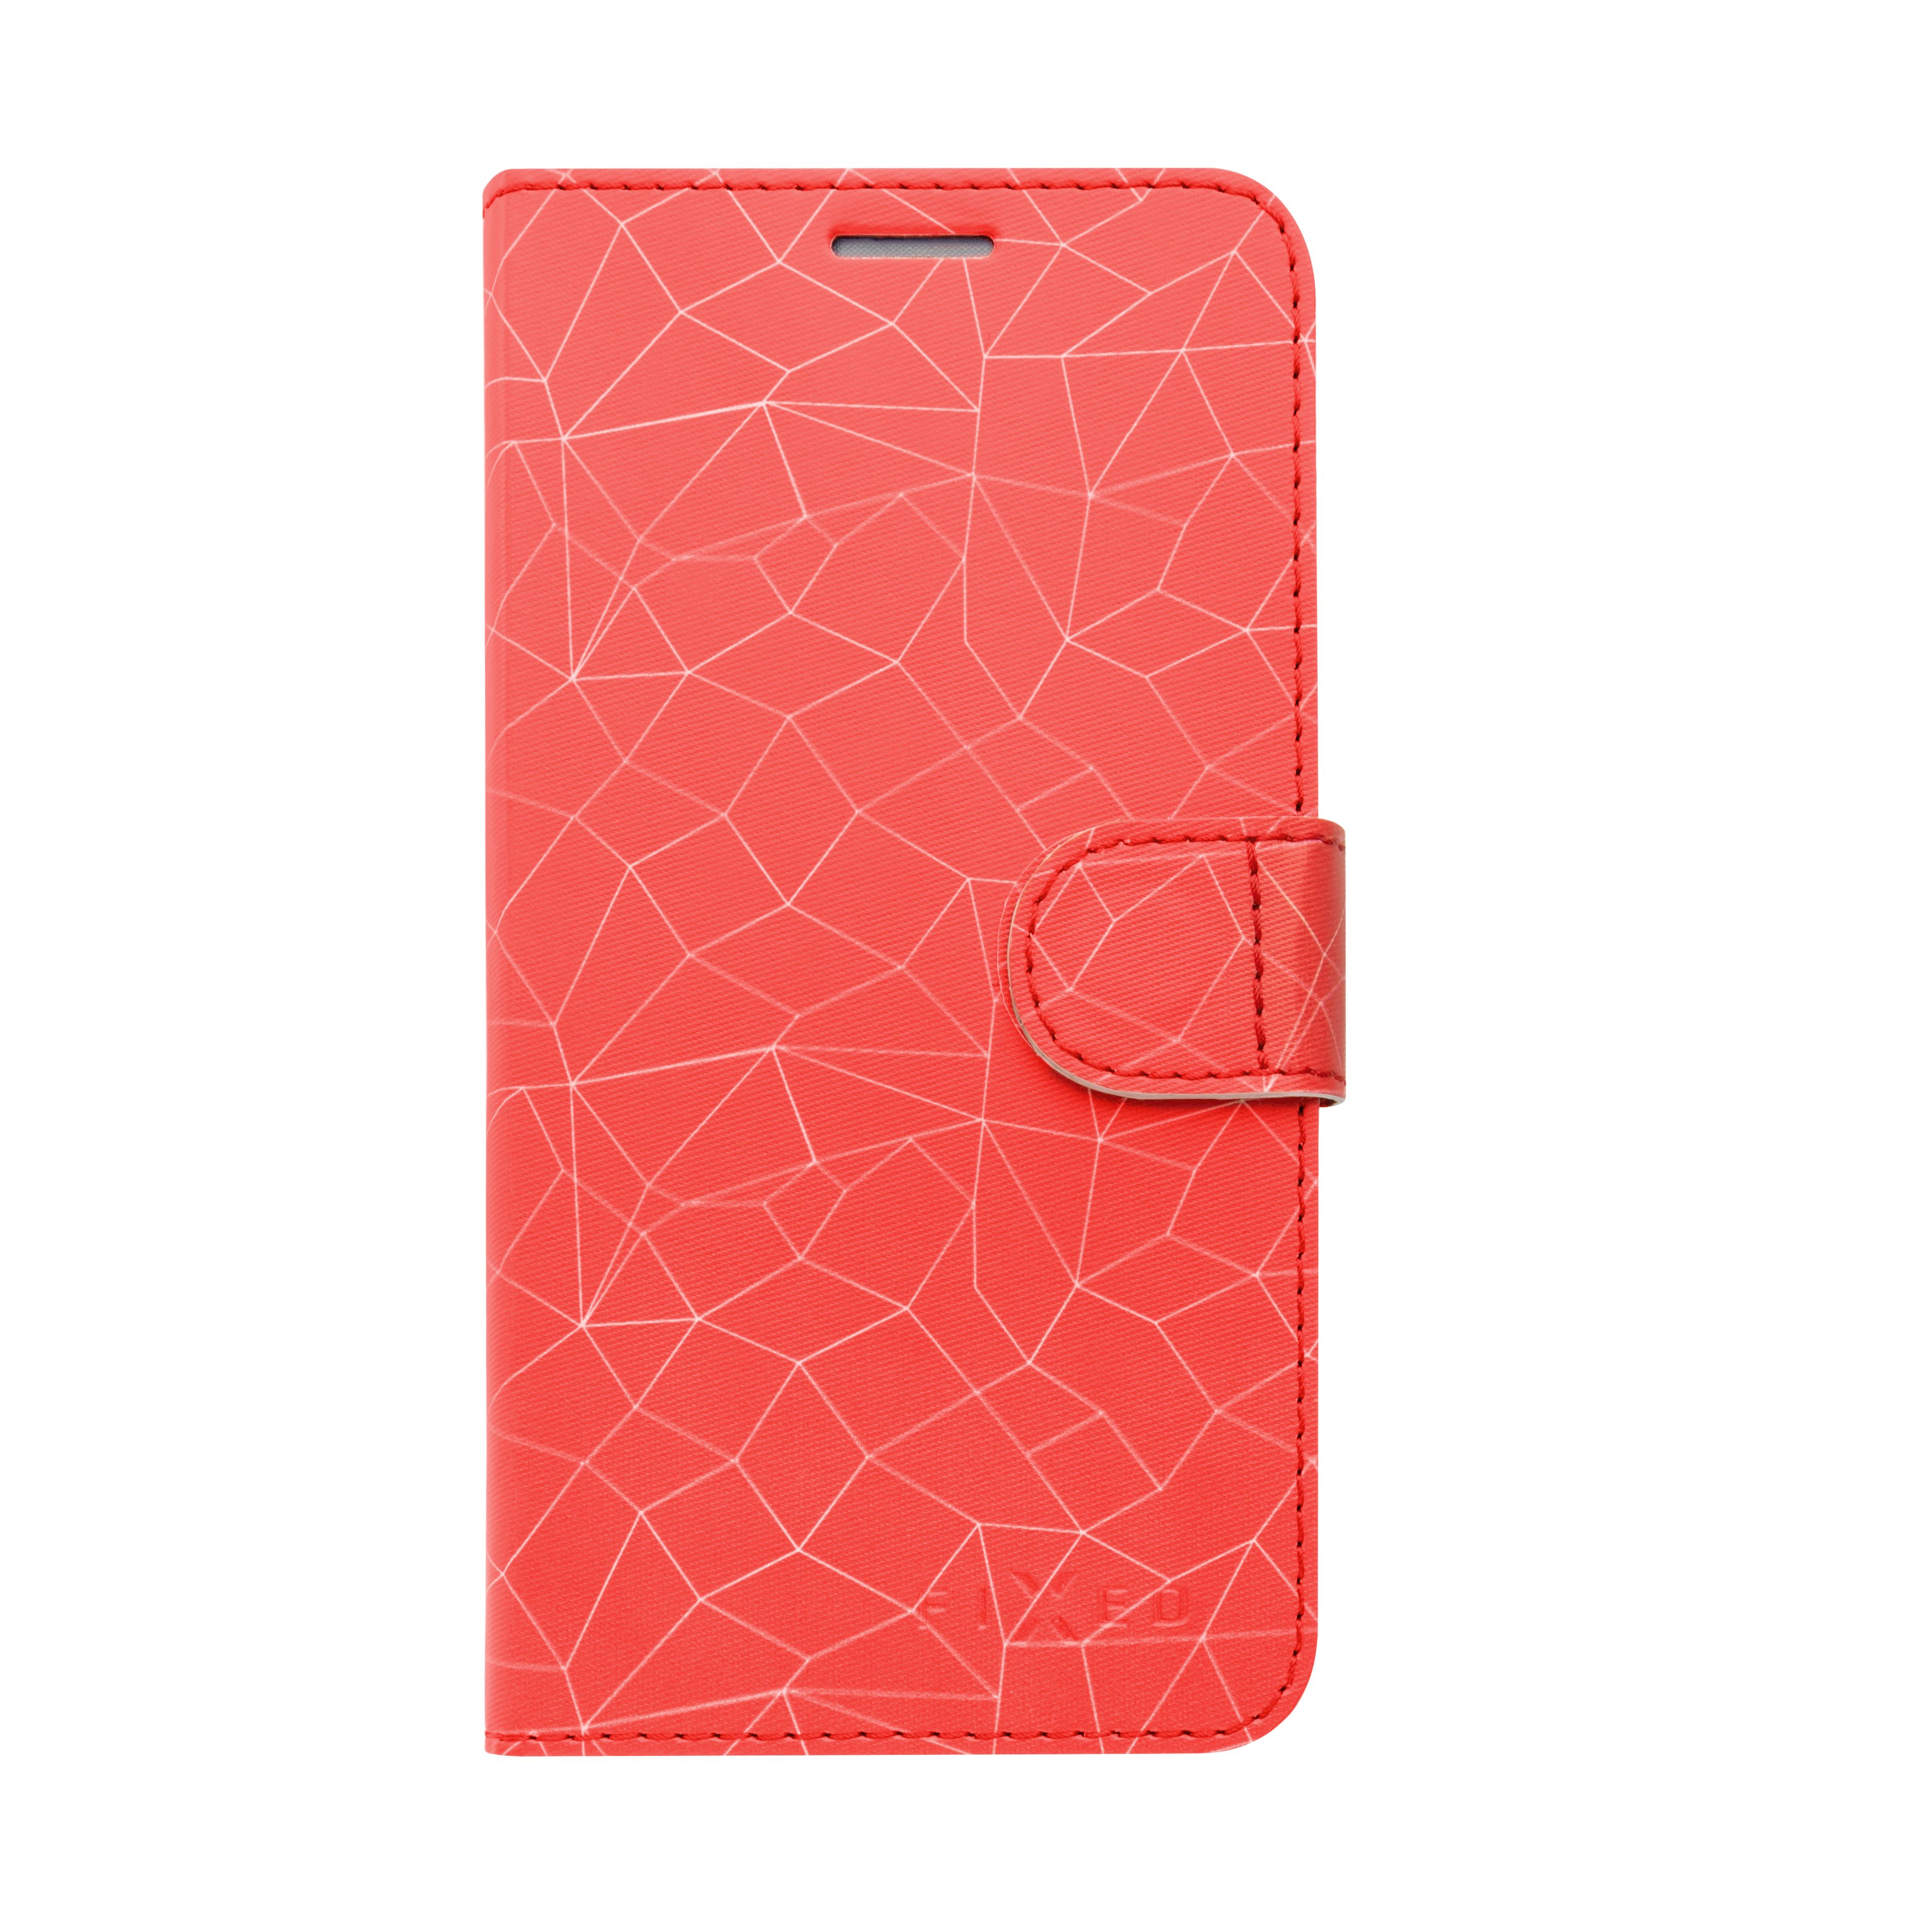 FIXED FIT flipové pouzdro pro Apple iPhone 7/8/SE 2020, motiv red mesh